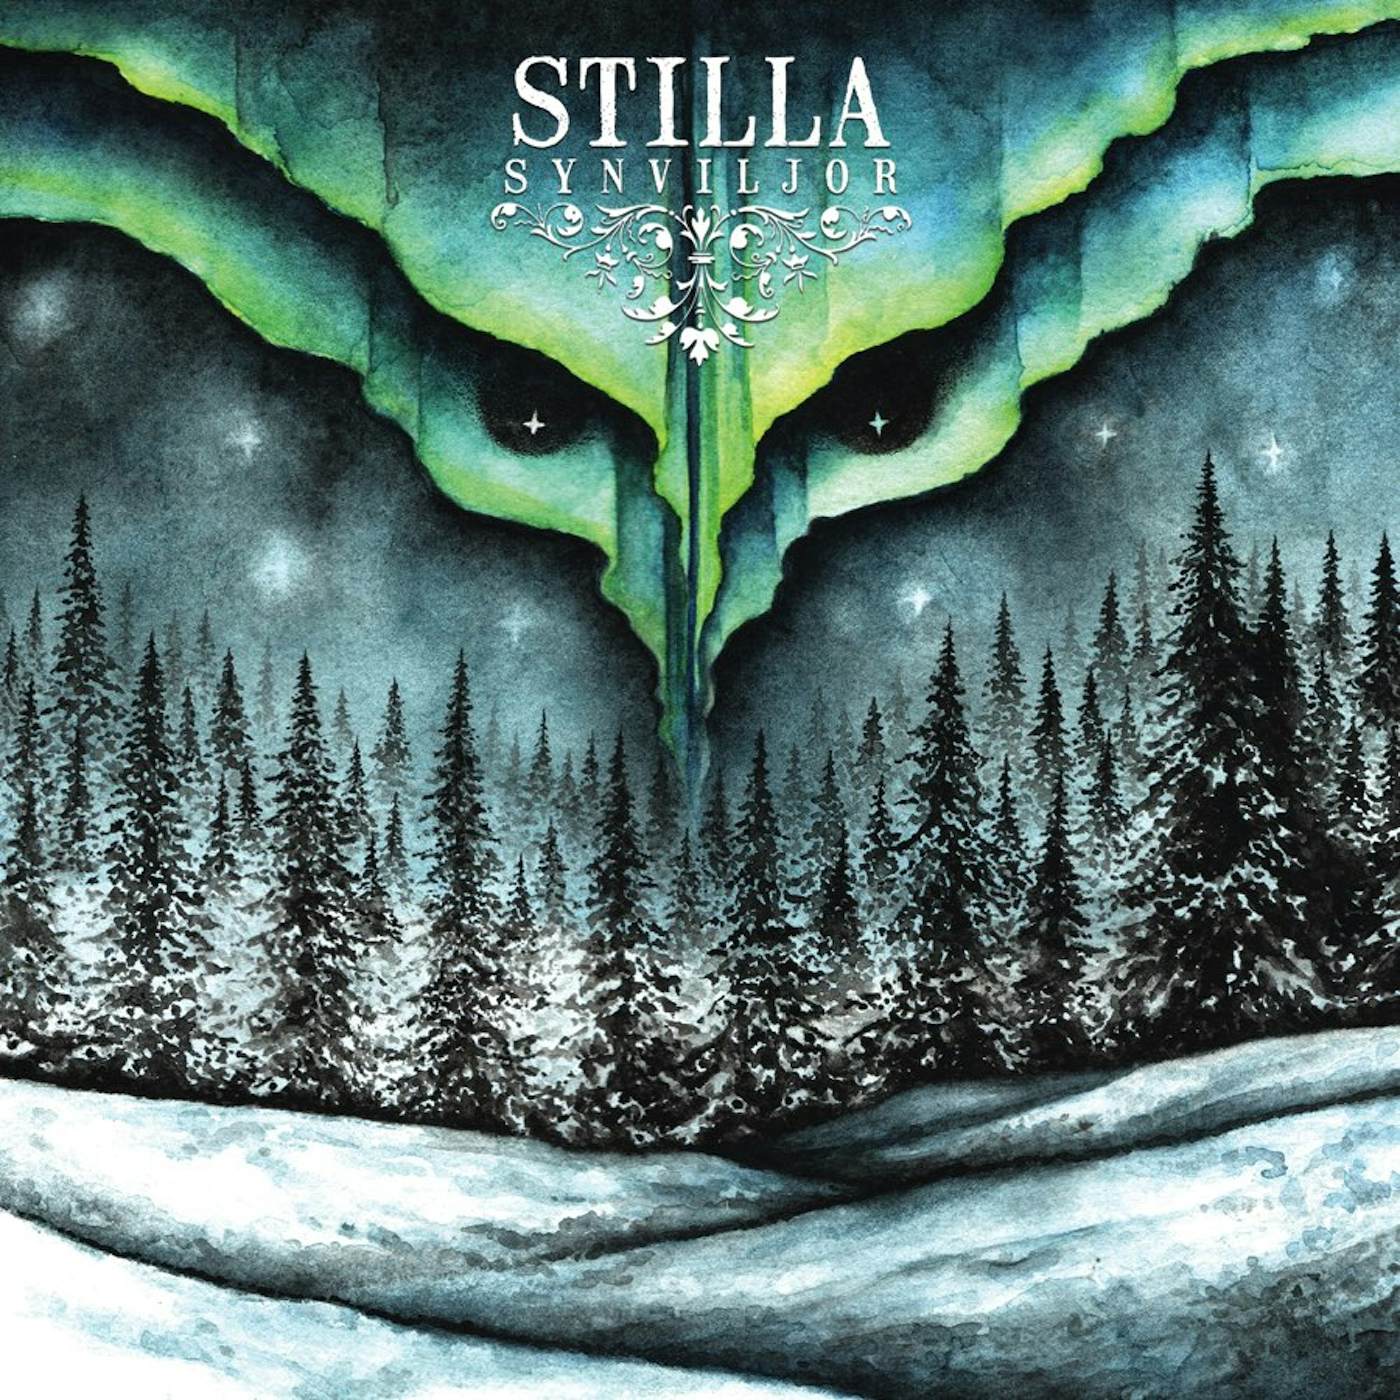 Stilla Synviljor Vinyl Record